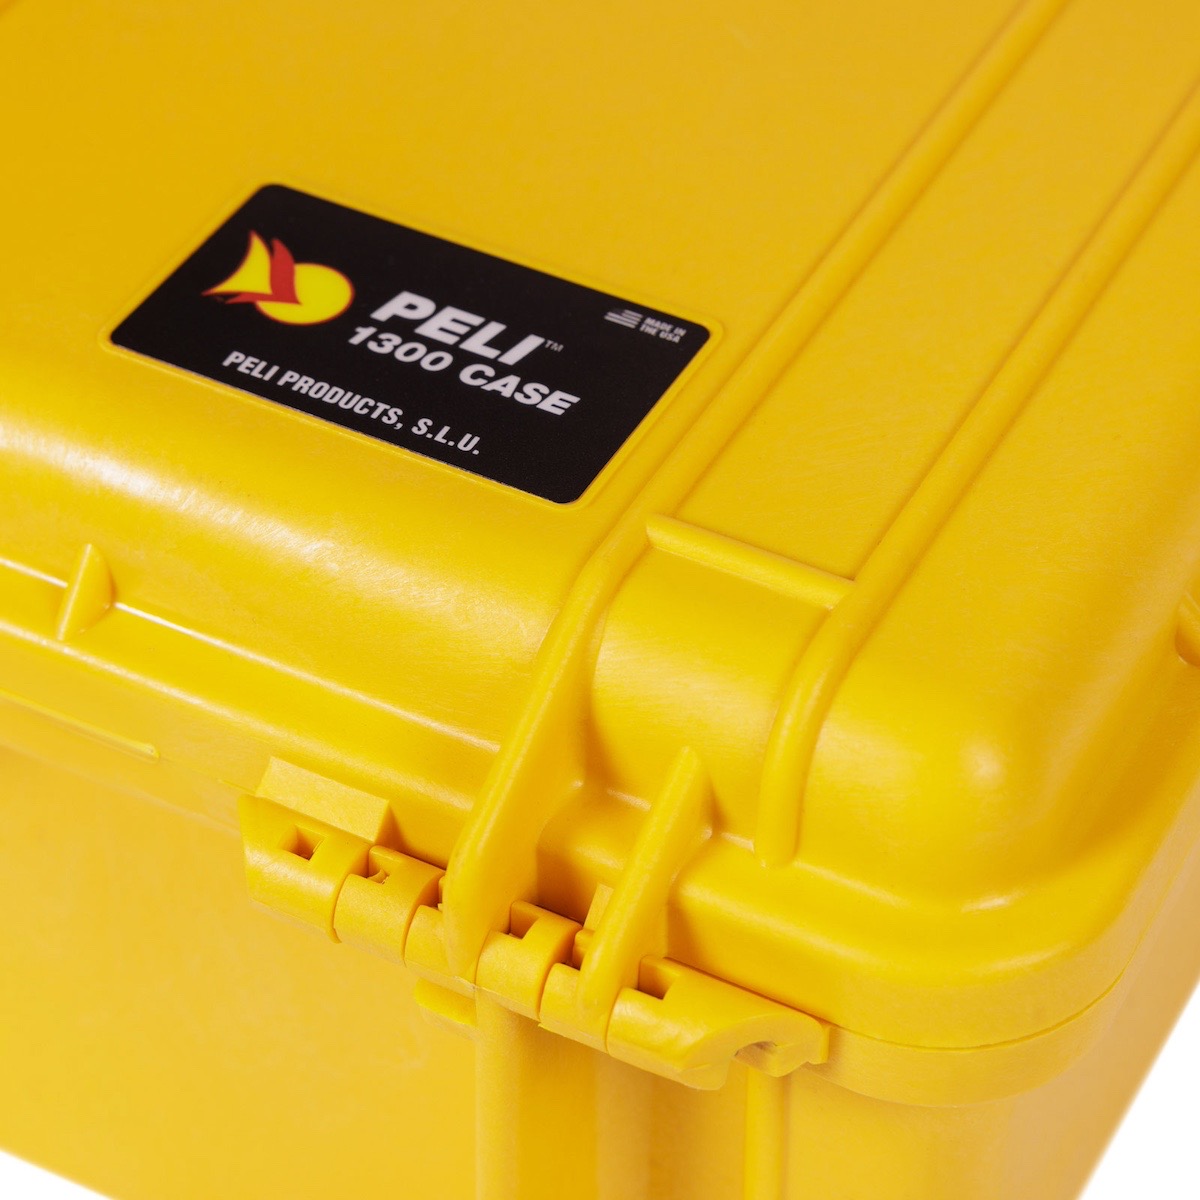 Peli Case 1300 mit Schaumstoff gelb